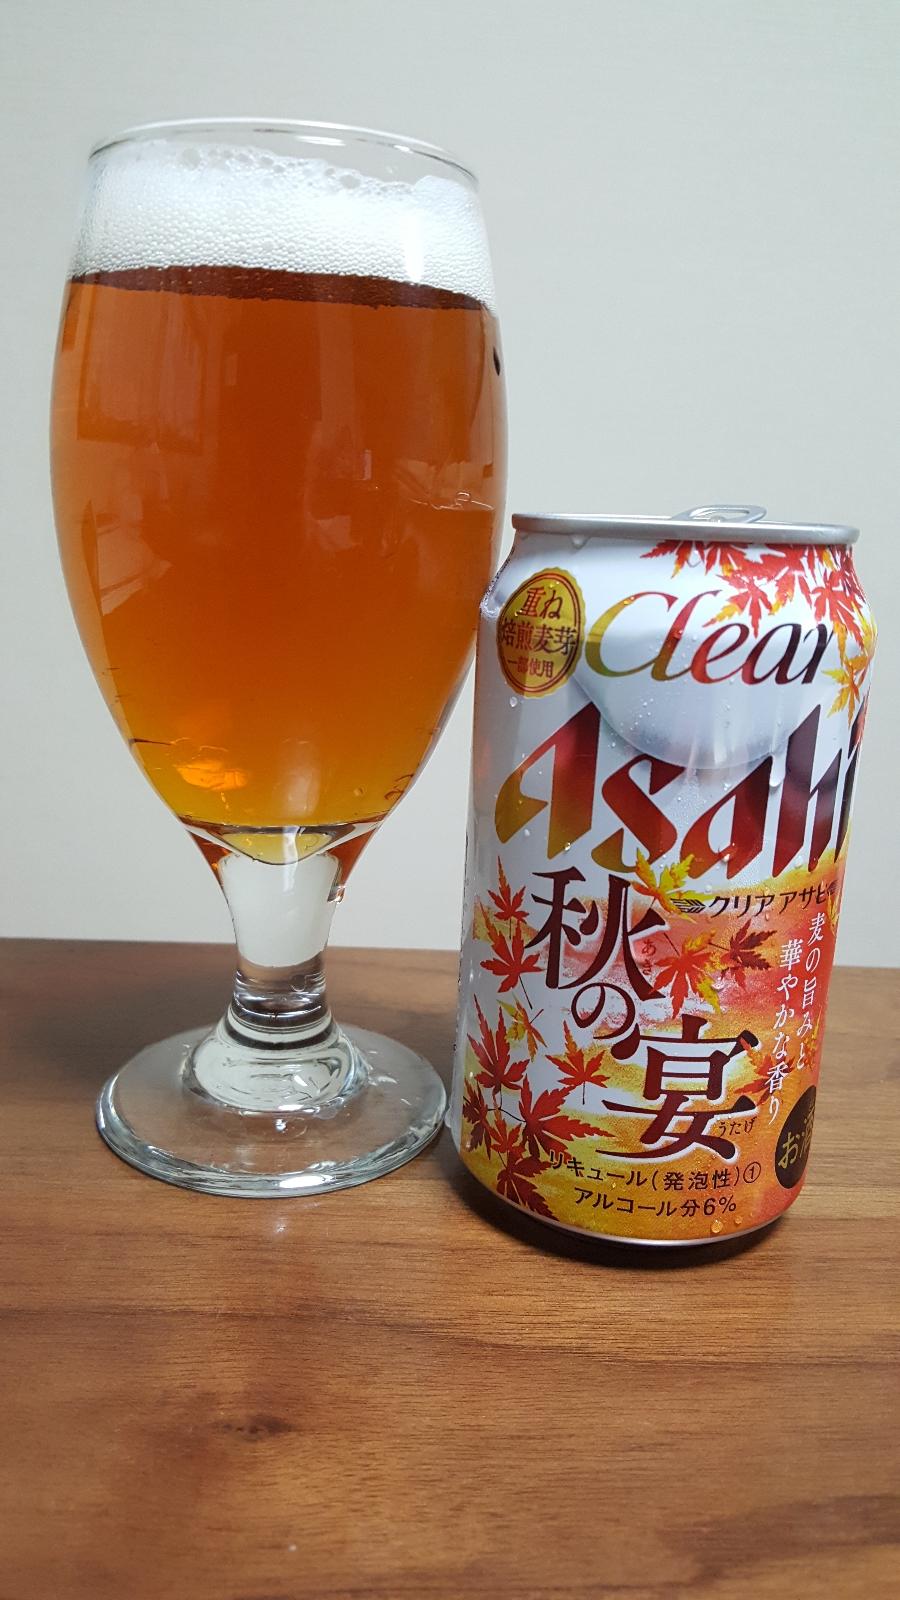 Asahi Clear Aki no Utage (2018)